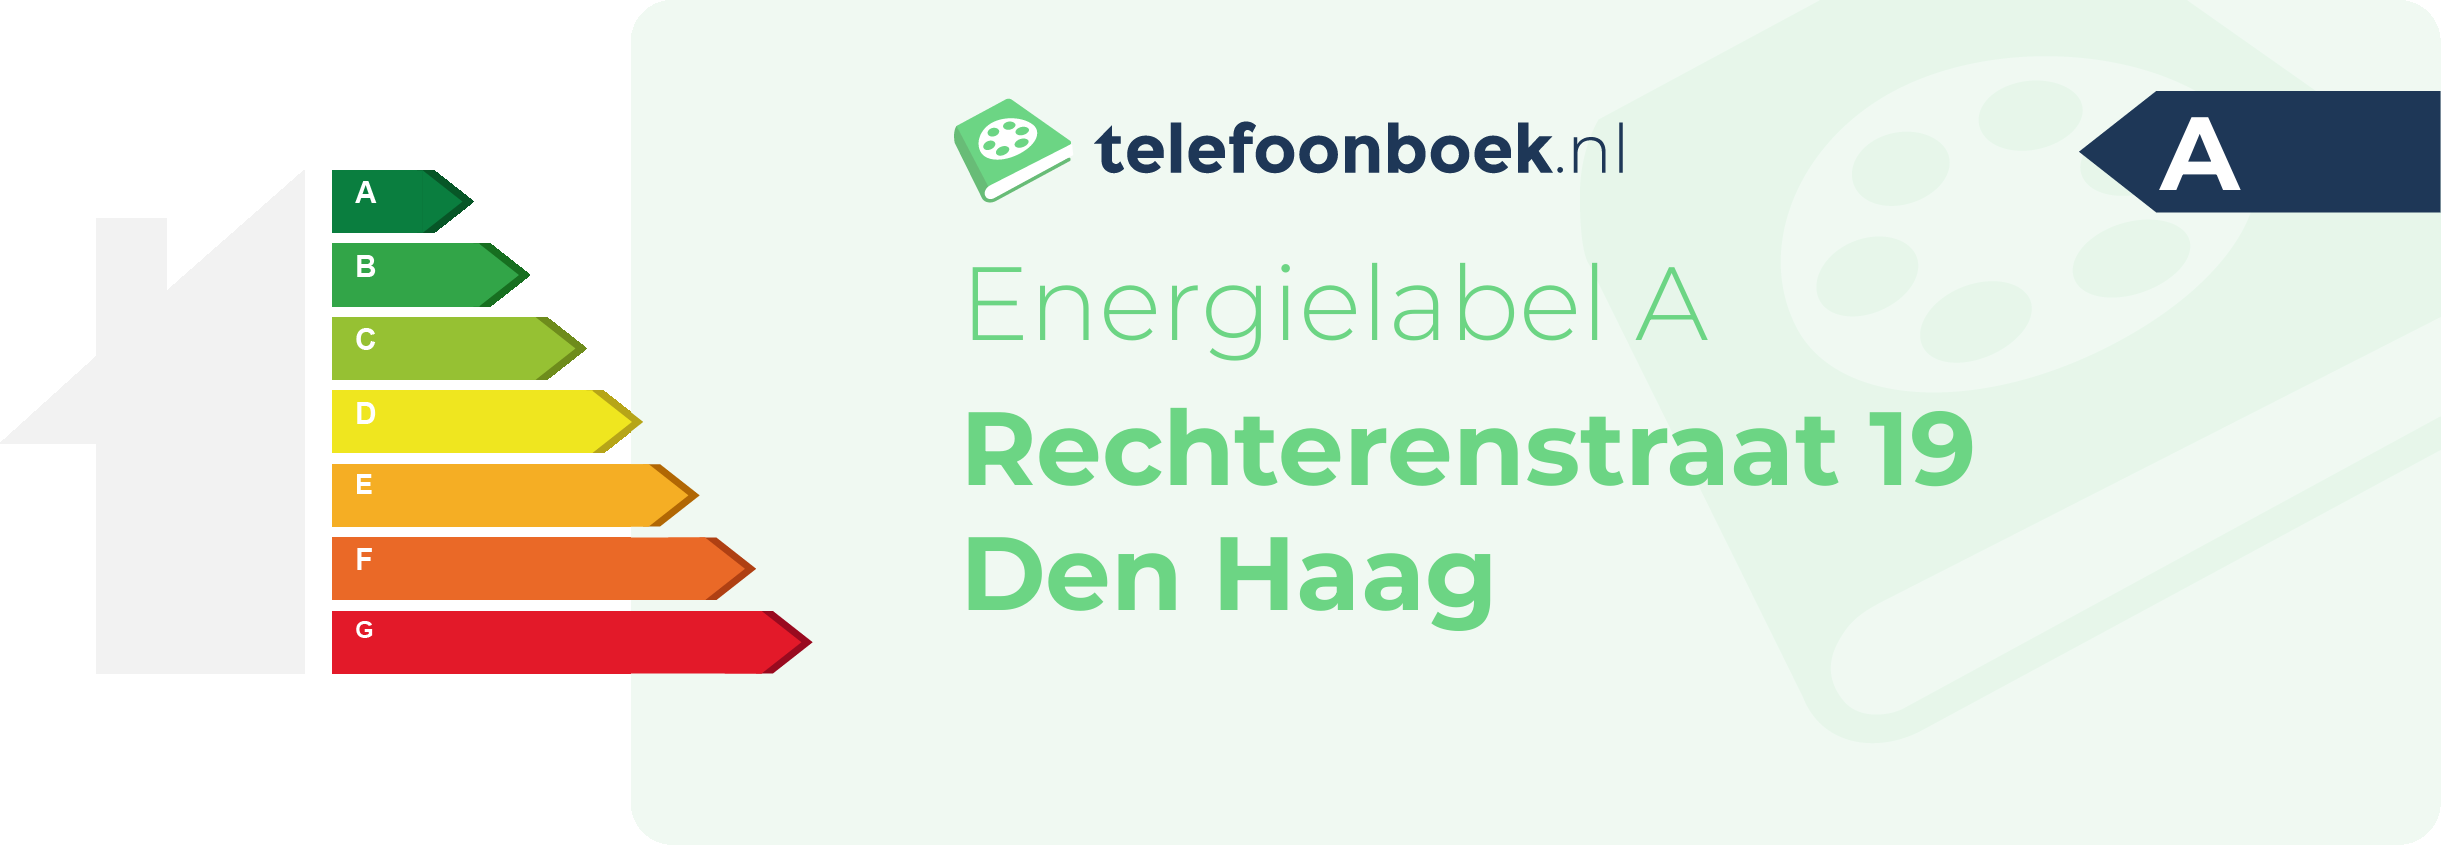 Energielabel Rechterenstraat 19 Den Haag